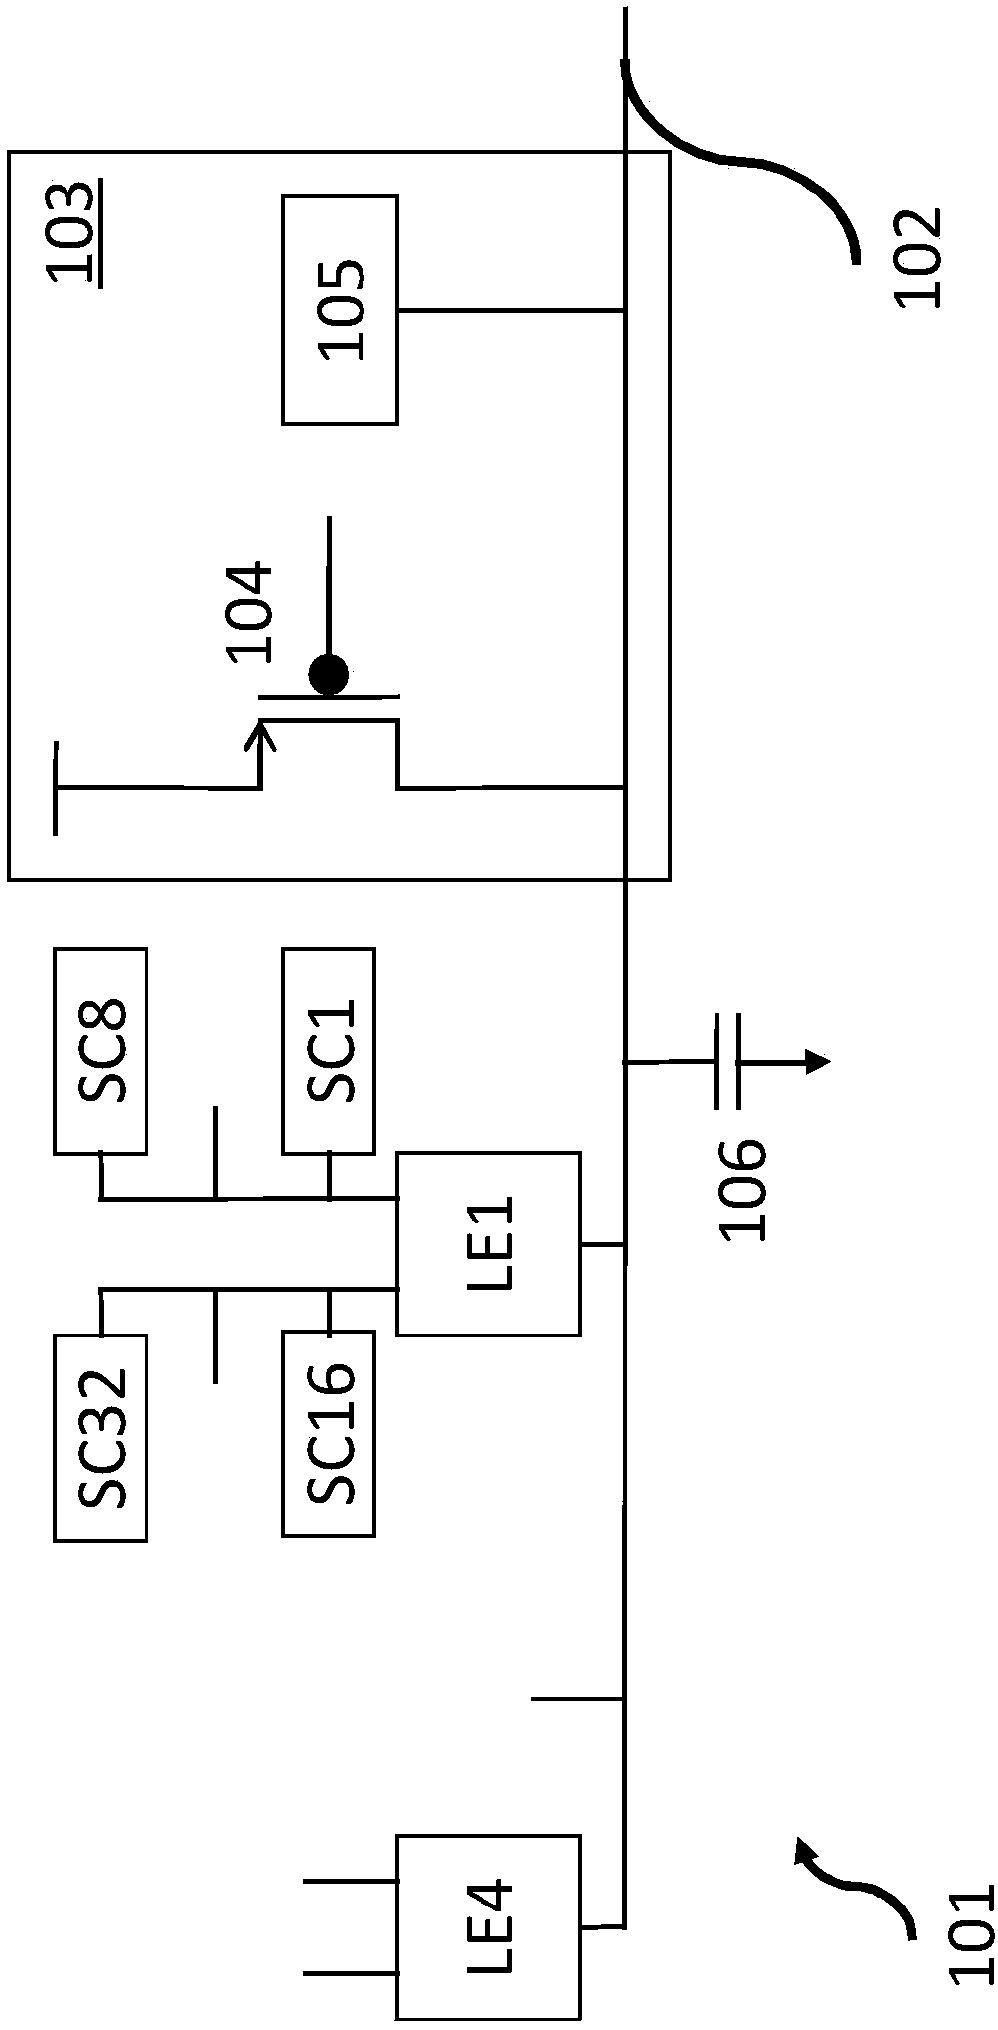 Single ended bitline current sense amplifier for SRAM applications